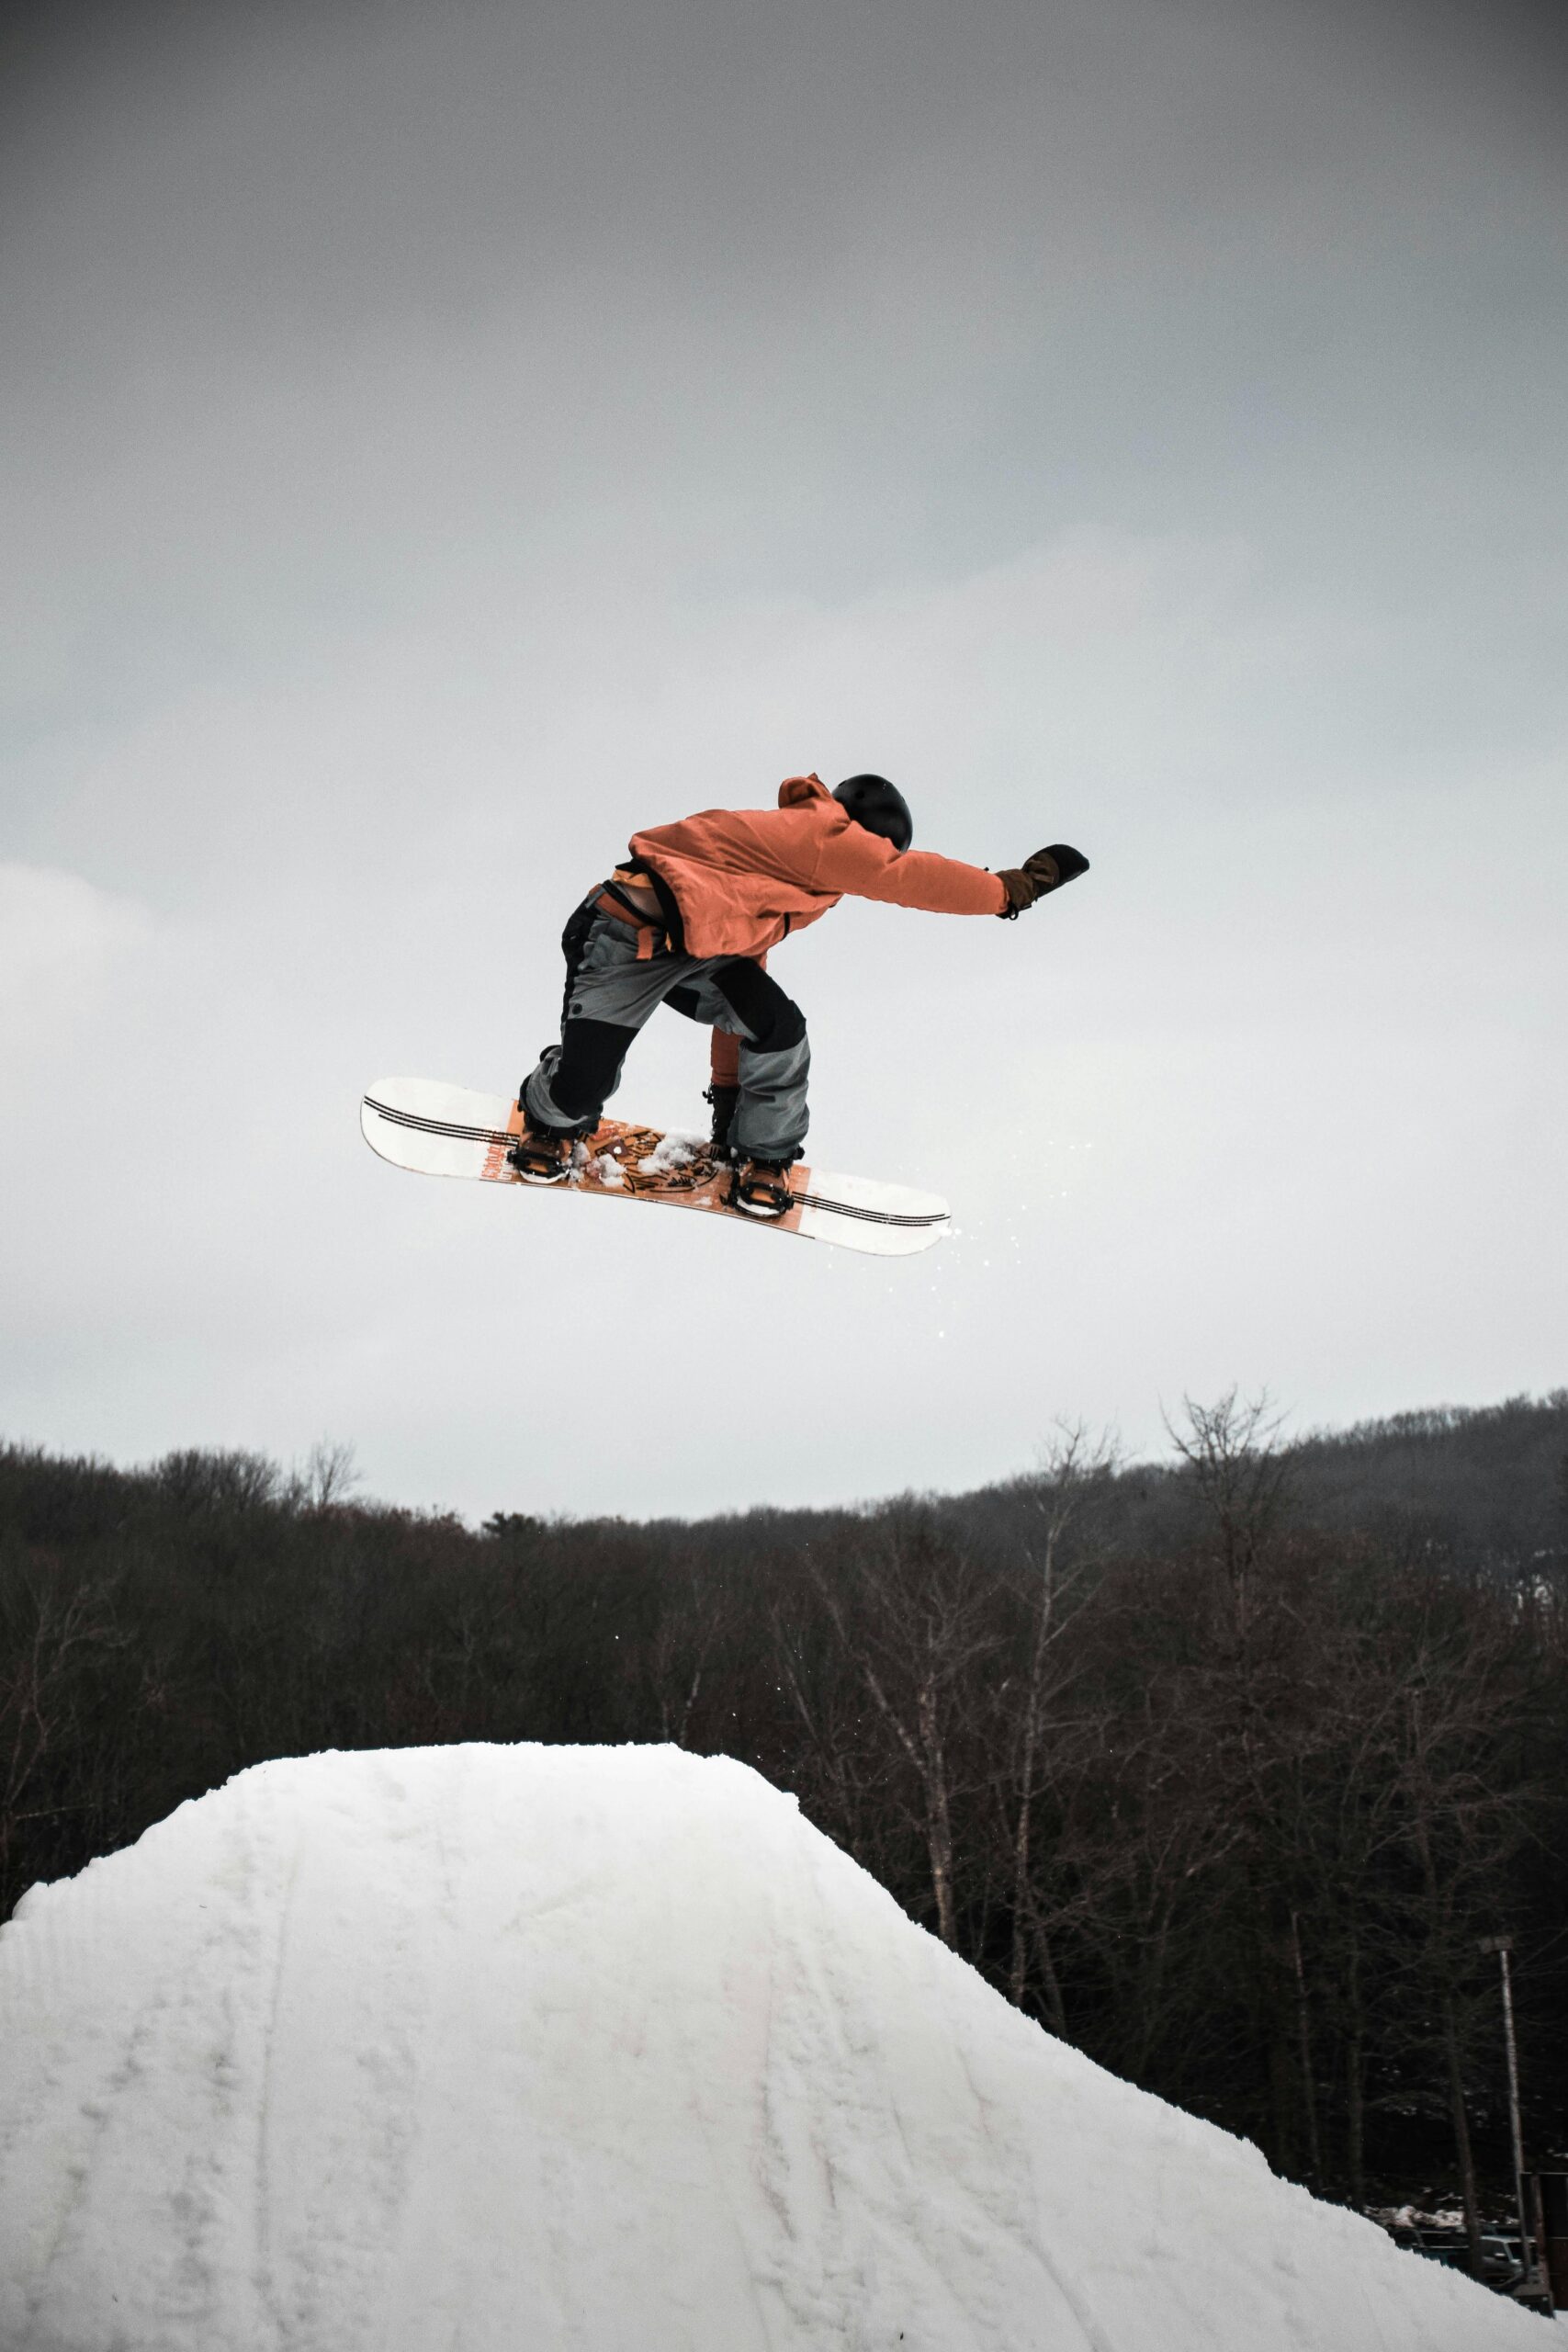 Sprankelende snowboards: de perfecte combinatie van stijl en prestatie